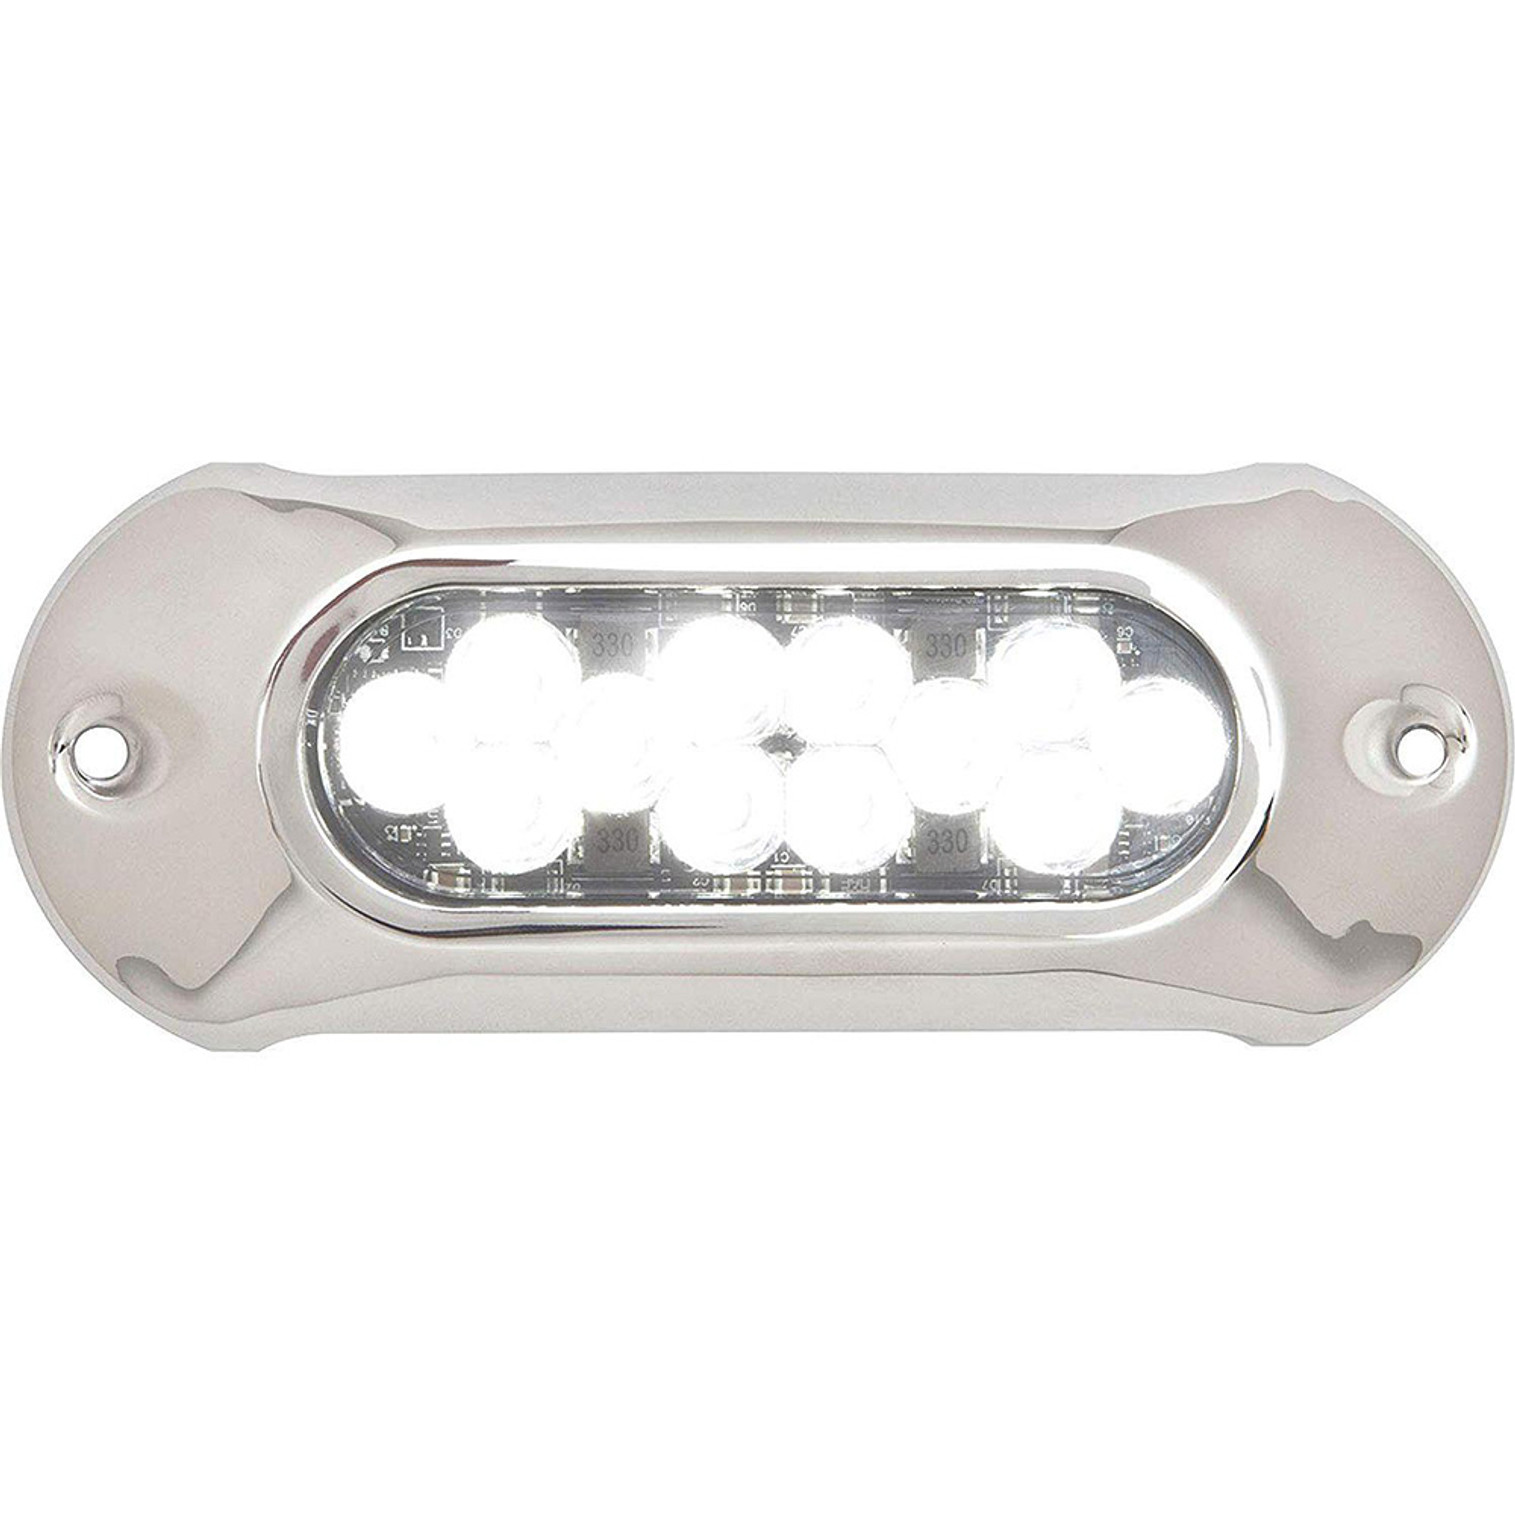 Attwood LightArmor HPX Underwater Light - 12 LED & White